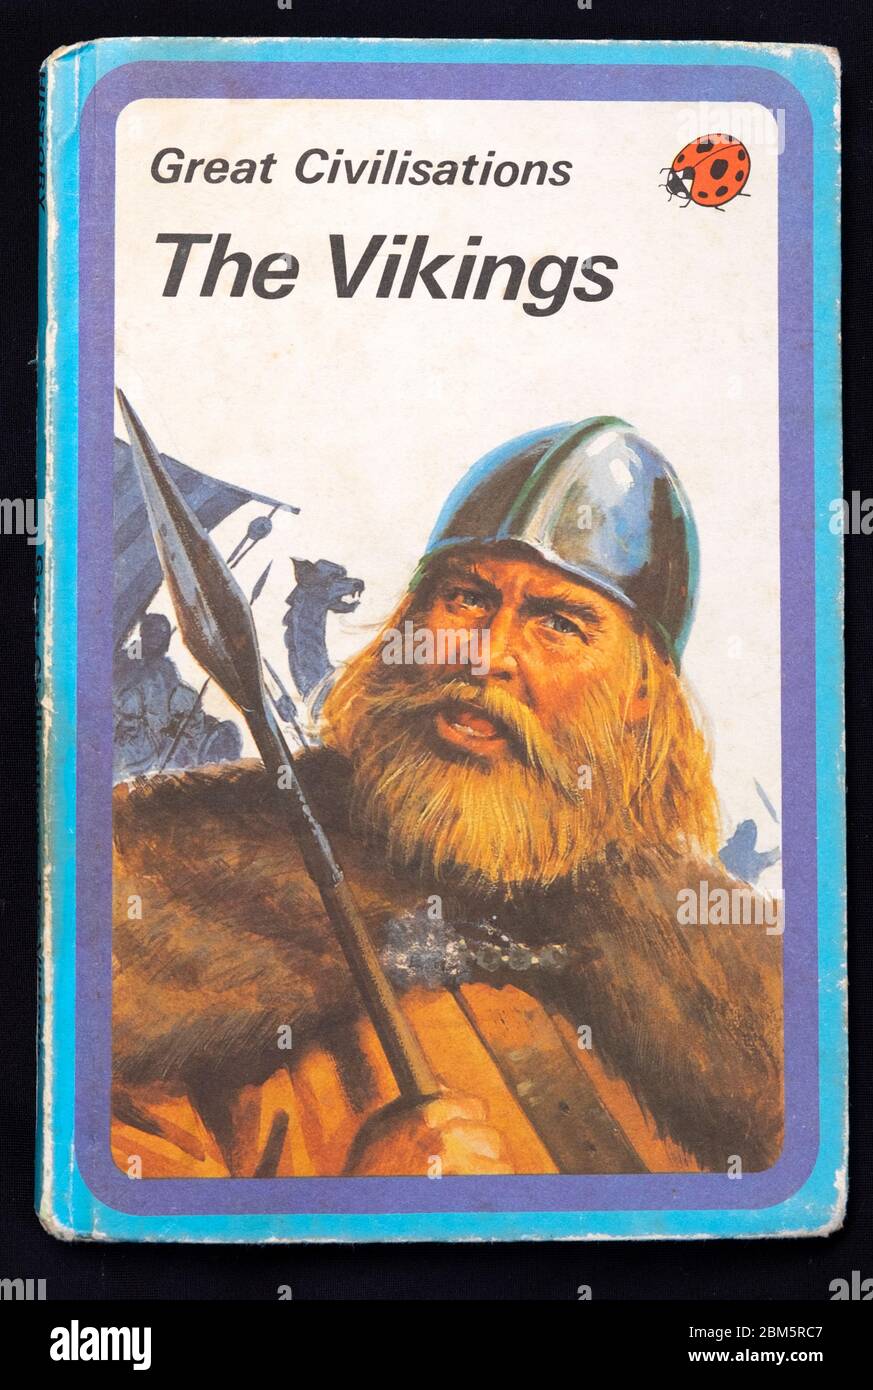 70er Jahre Marienkäfer Buch große Zivilisationen Serie 'die Wikinger' Viking Britische Kinder Buch Cover 1976 London UK Stockfoto